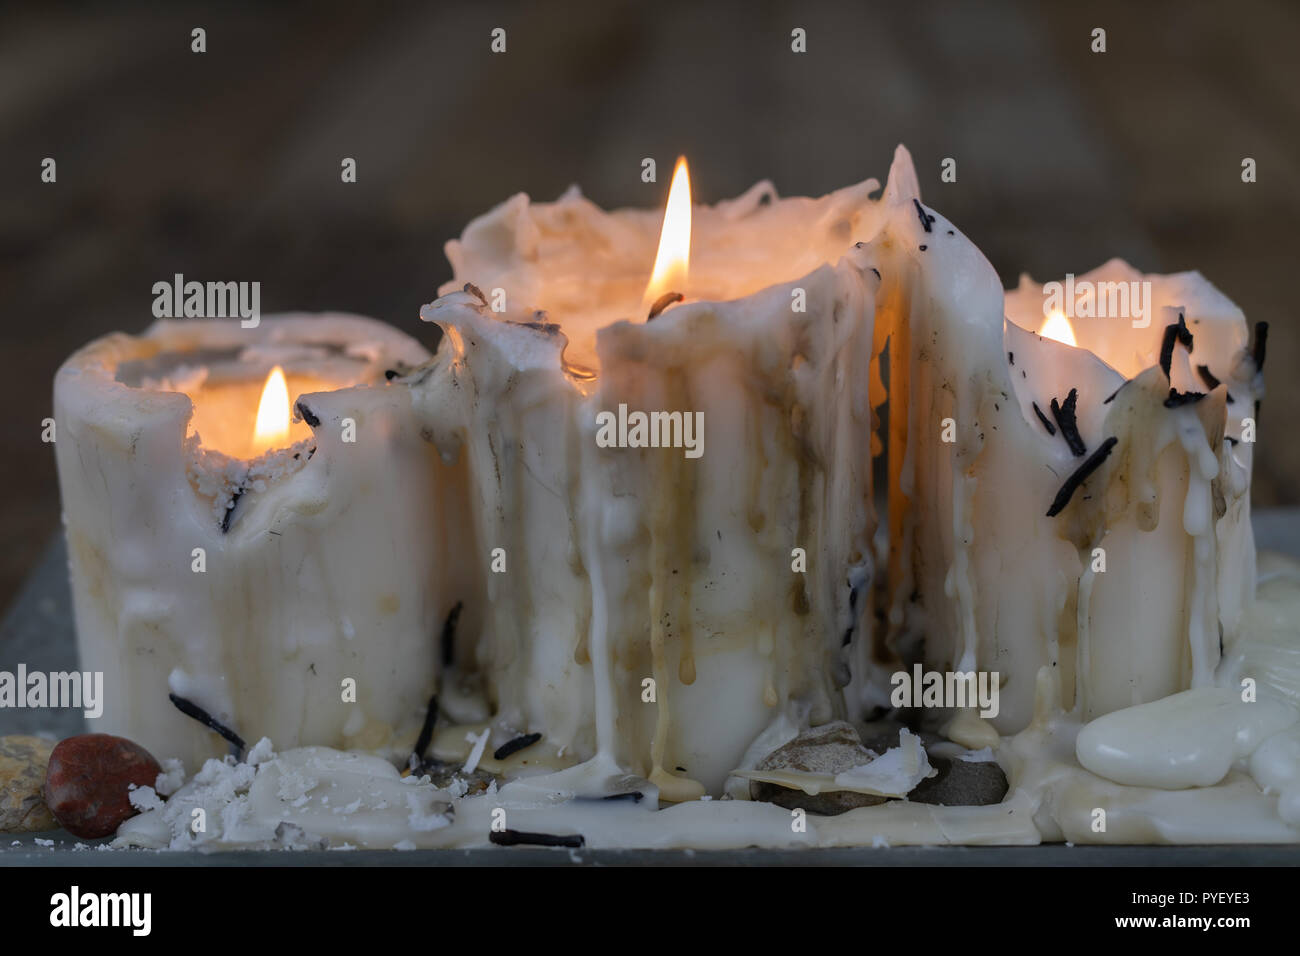 Alte Kerzen mit schmutzigen Wachs auf einen hölzernen Tisch. Brennende  schmutzig Kerzenständer auf einem Standfuß aus Glas. Der dunkle Hintergrund  Stockfotografie - Alamy